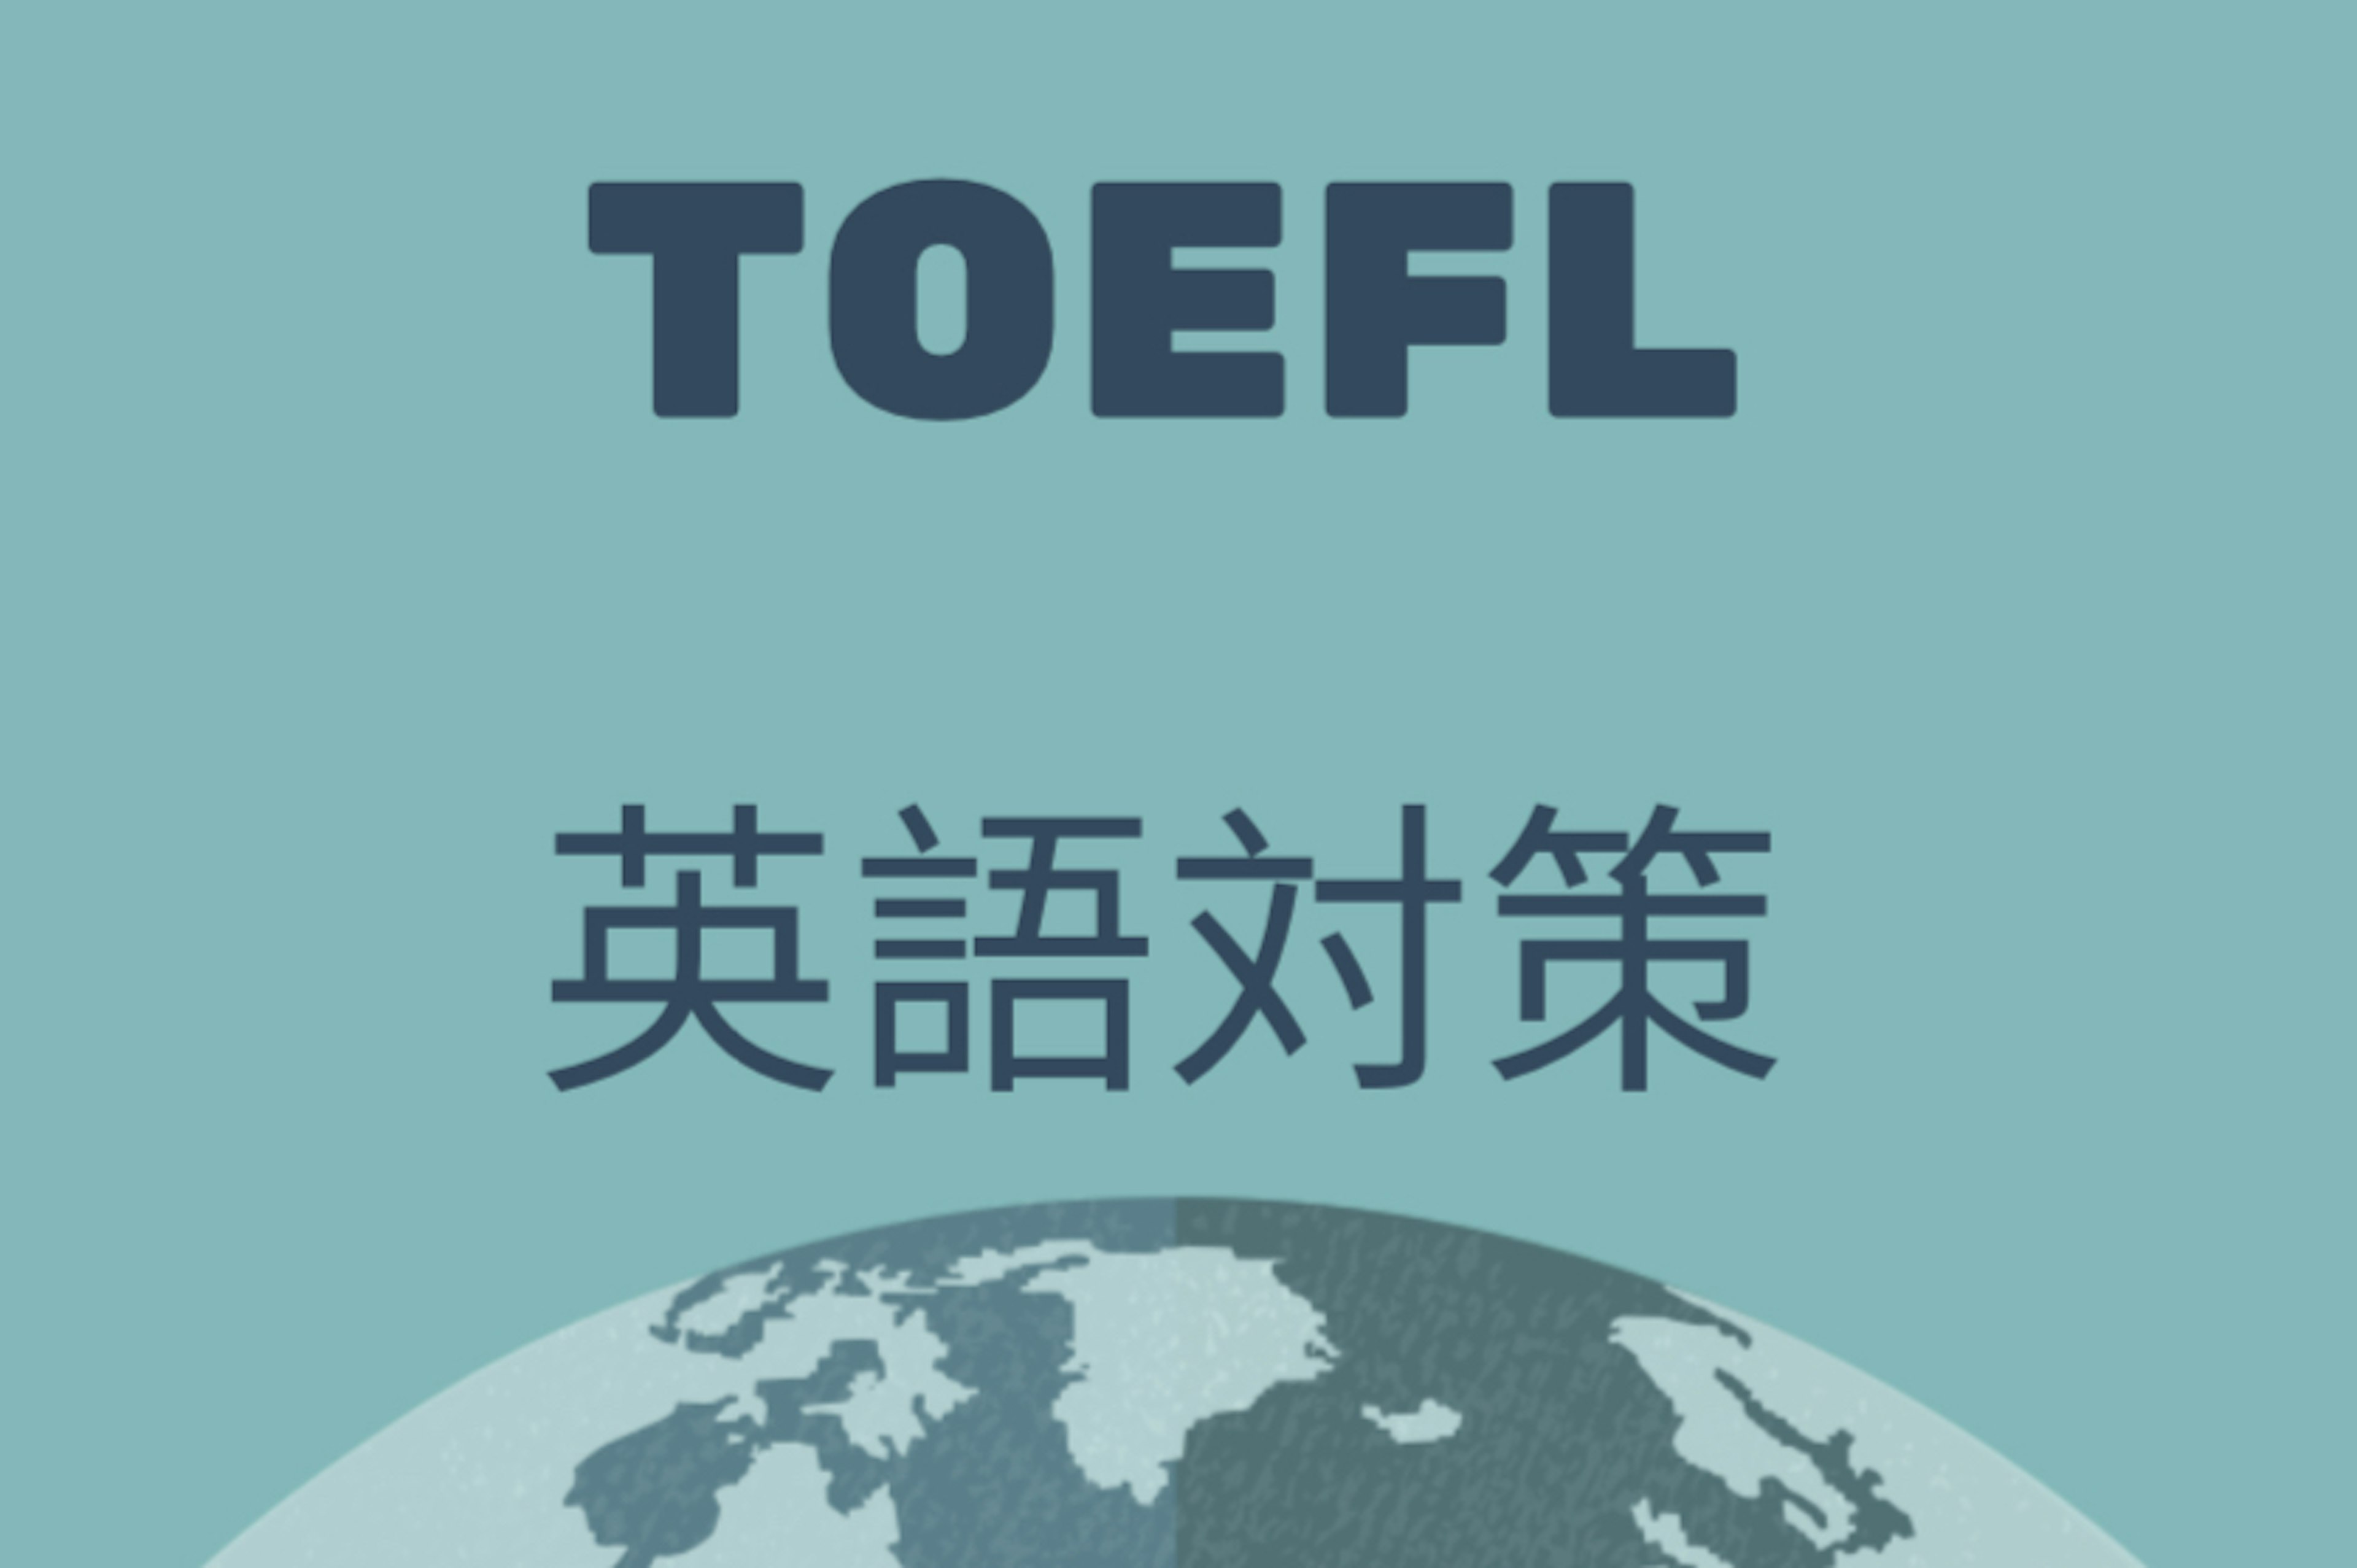 オフィシャルガイドブックで学ぶ【TOEFL講座】